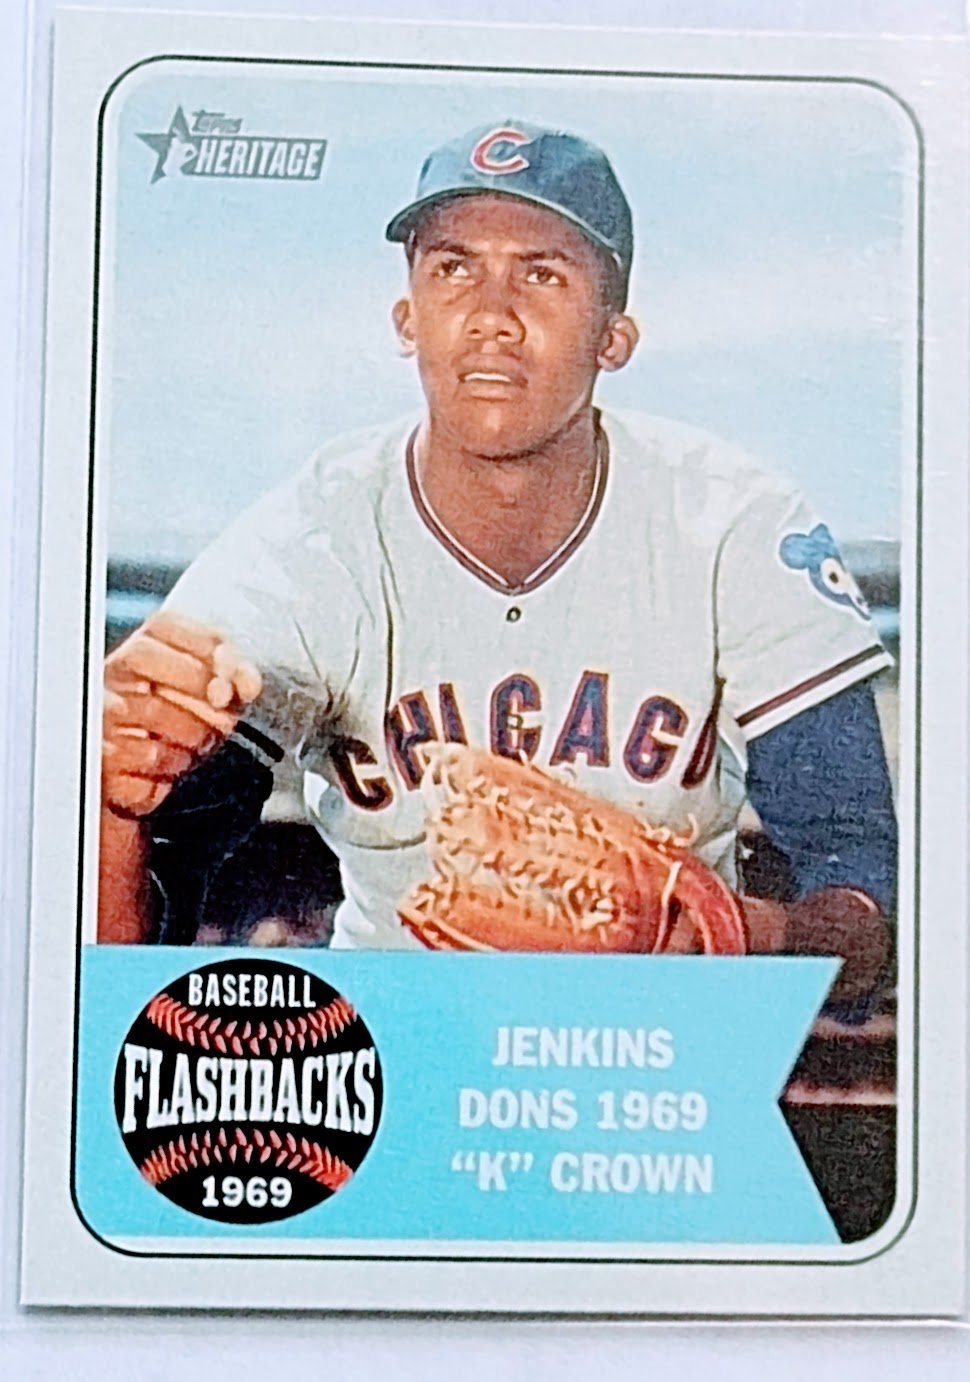 2018 Topps Heritage Fergie Jenkins Don's 1969 k Crown Flashbacks Insert  Baseball Card TPTV